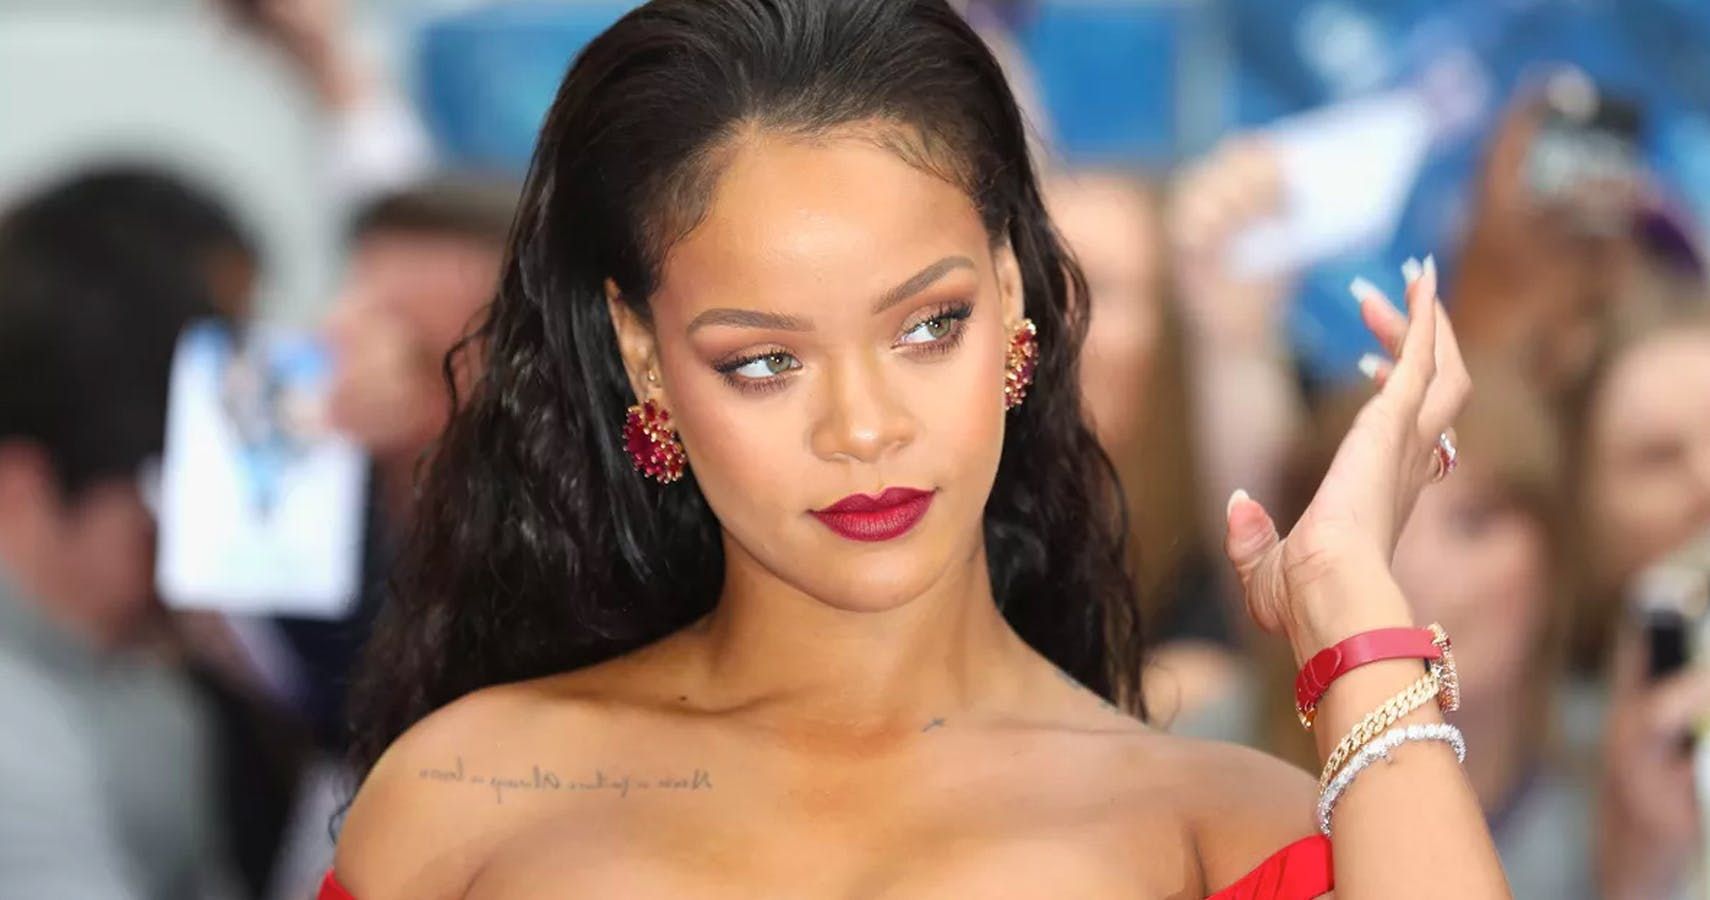 Veja como outras celebridades reagiram ao status de bilionária de Rihanna